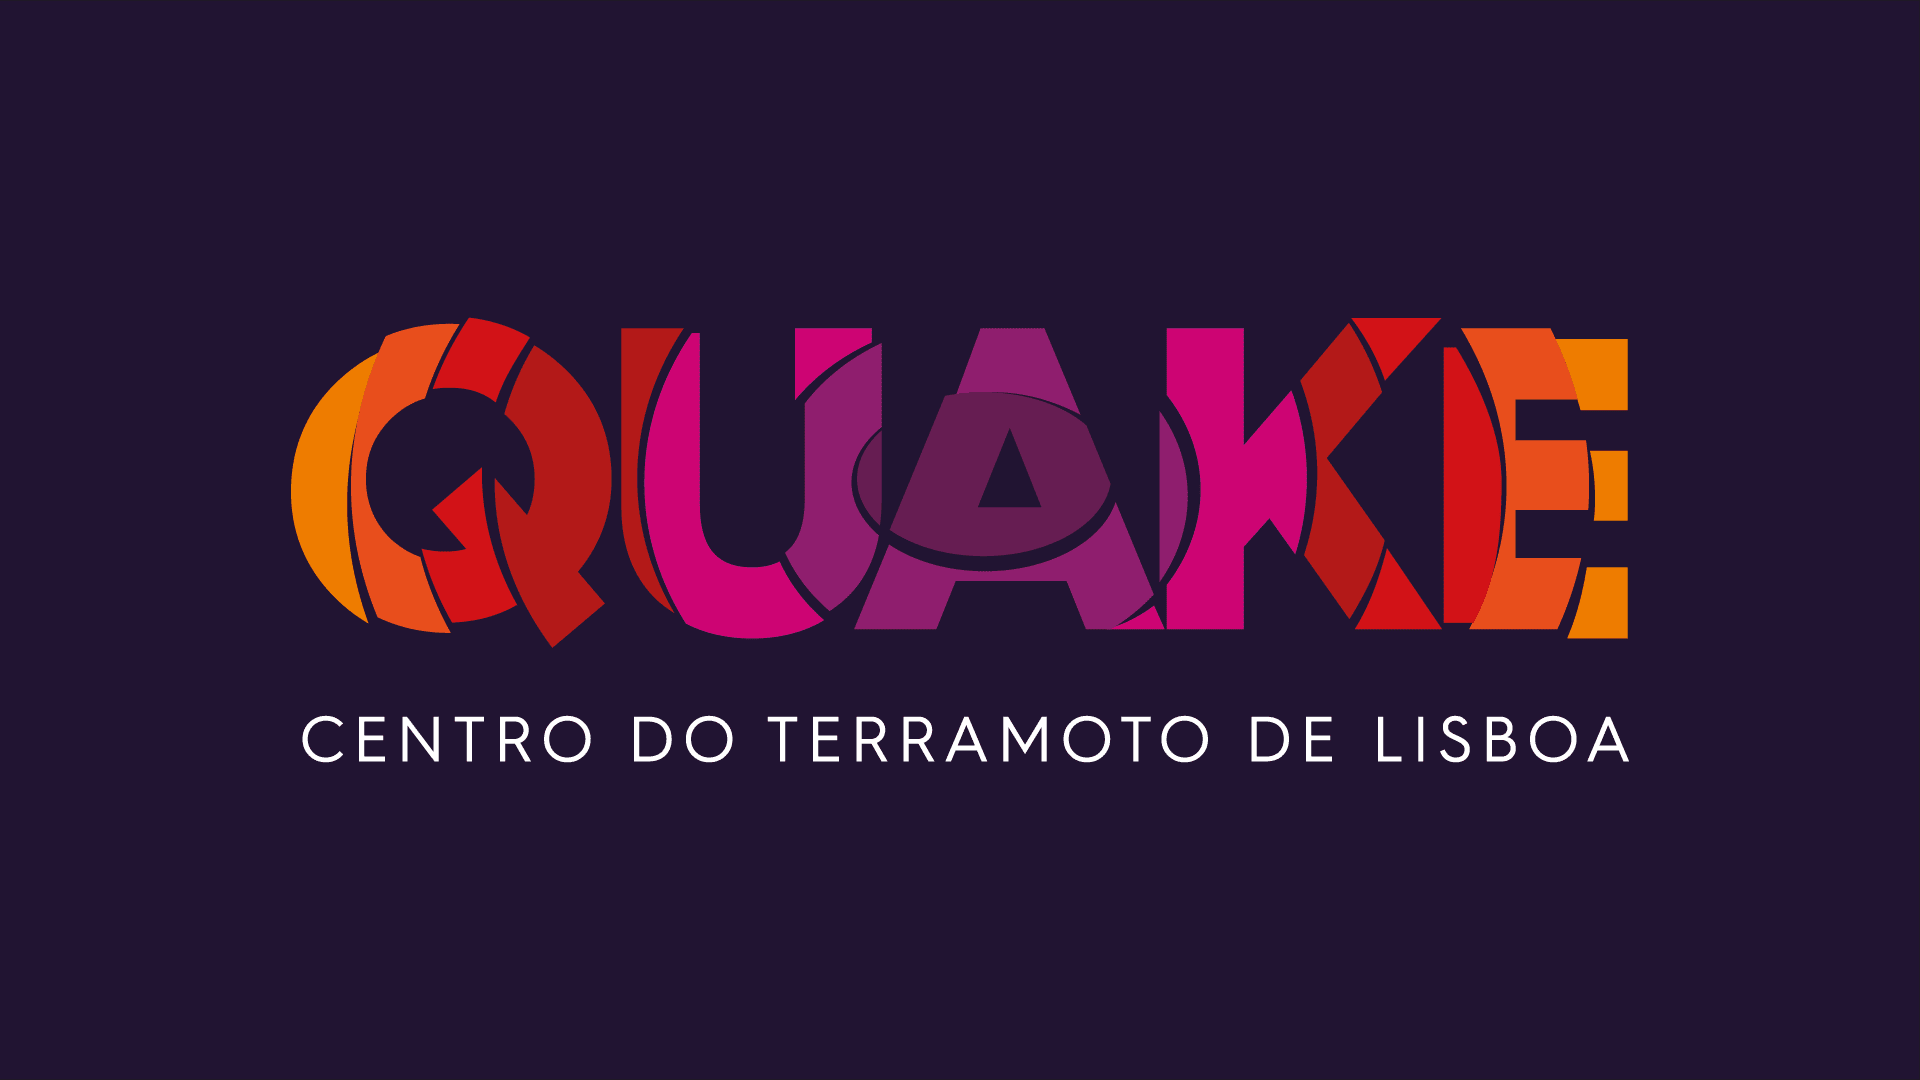 Quake Centro do Terramoto de Lisboa